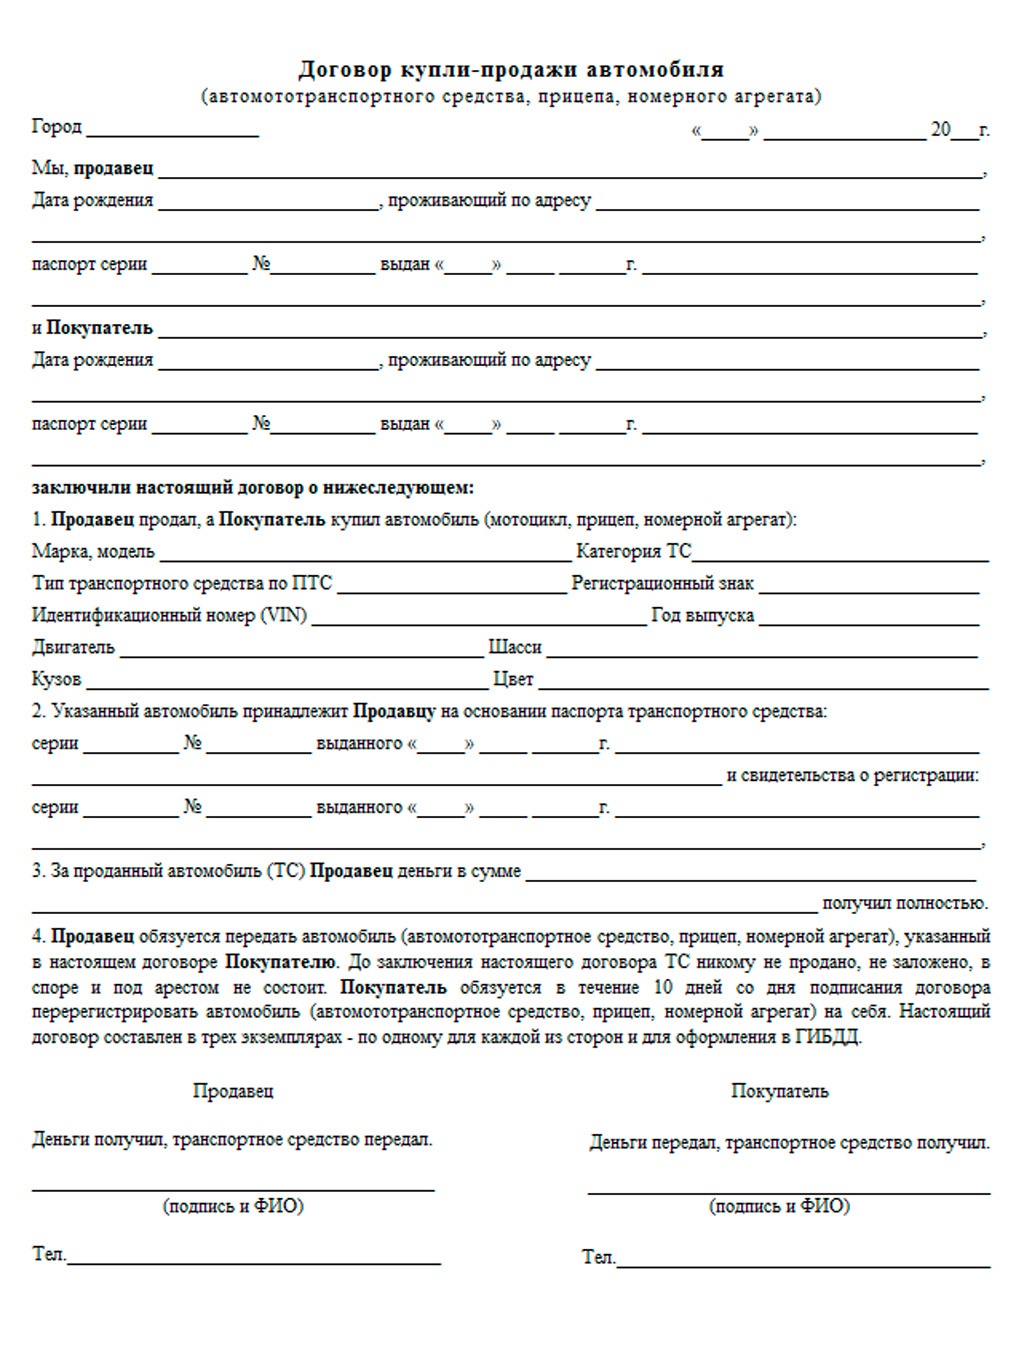 حظر القيادة بدون حقوق روسية عام 2014